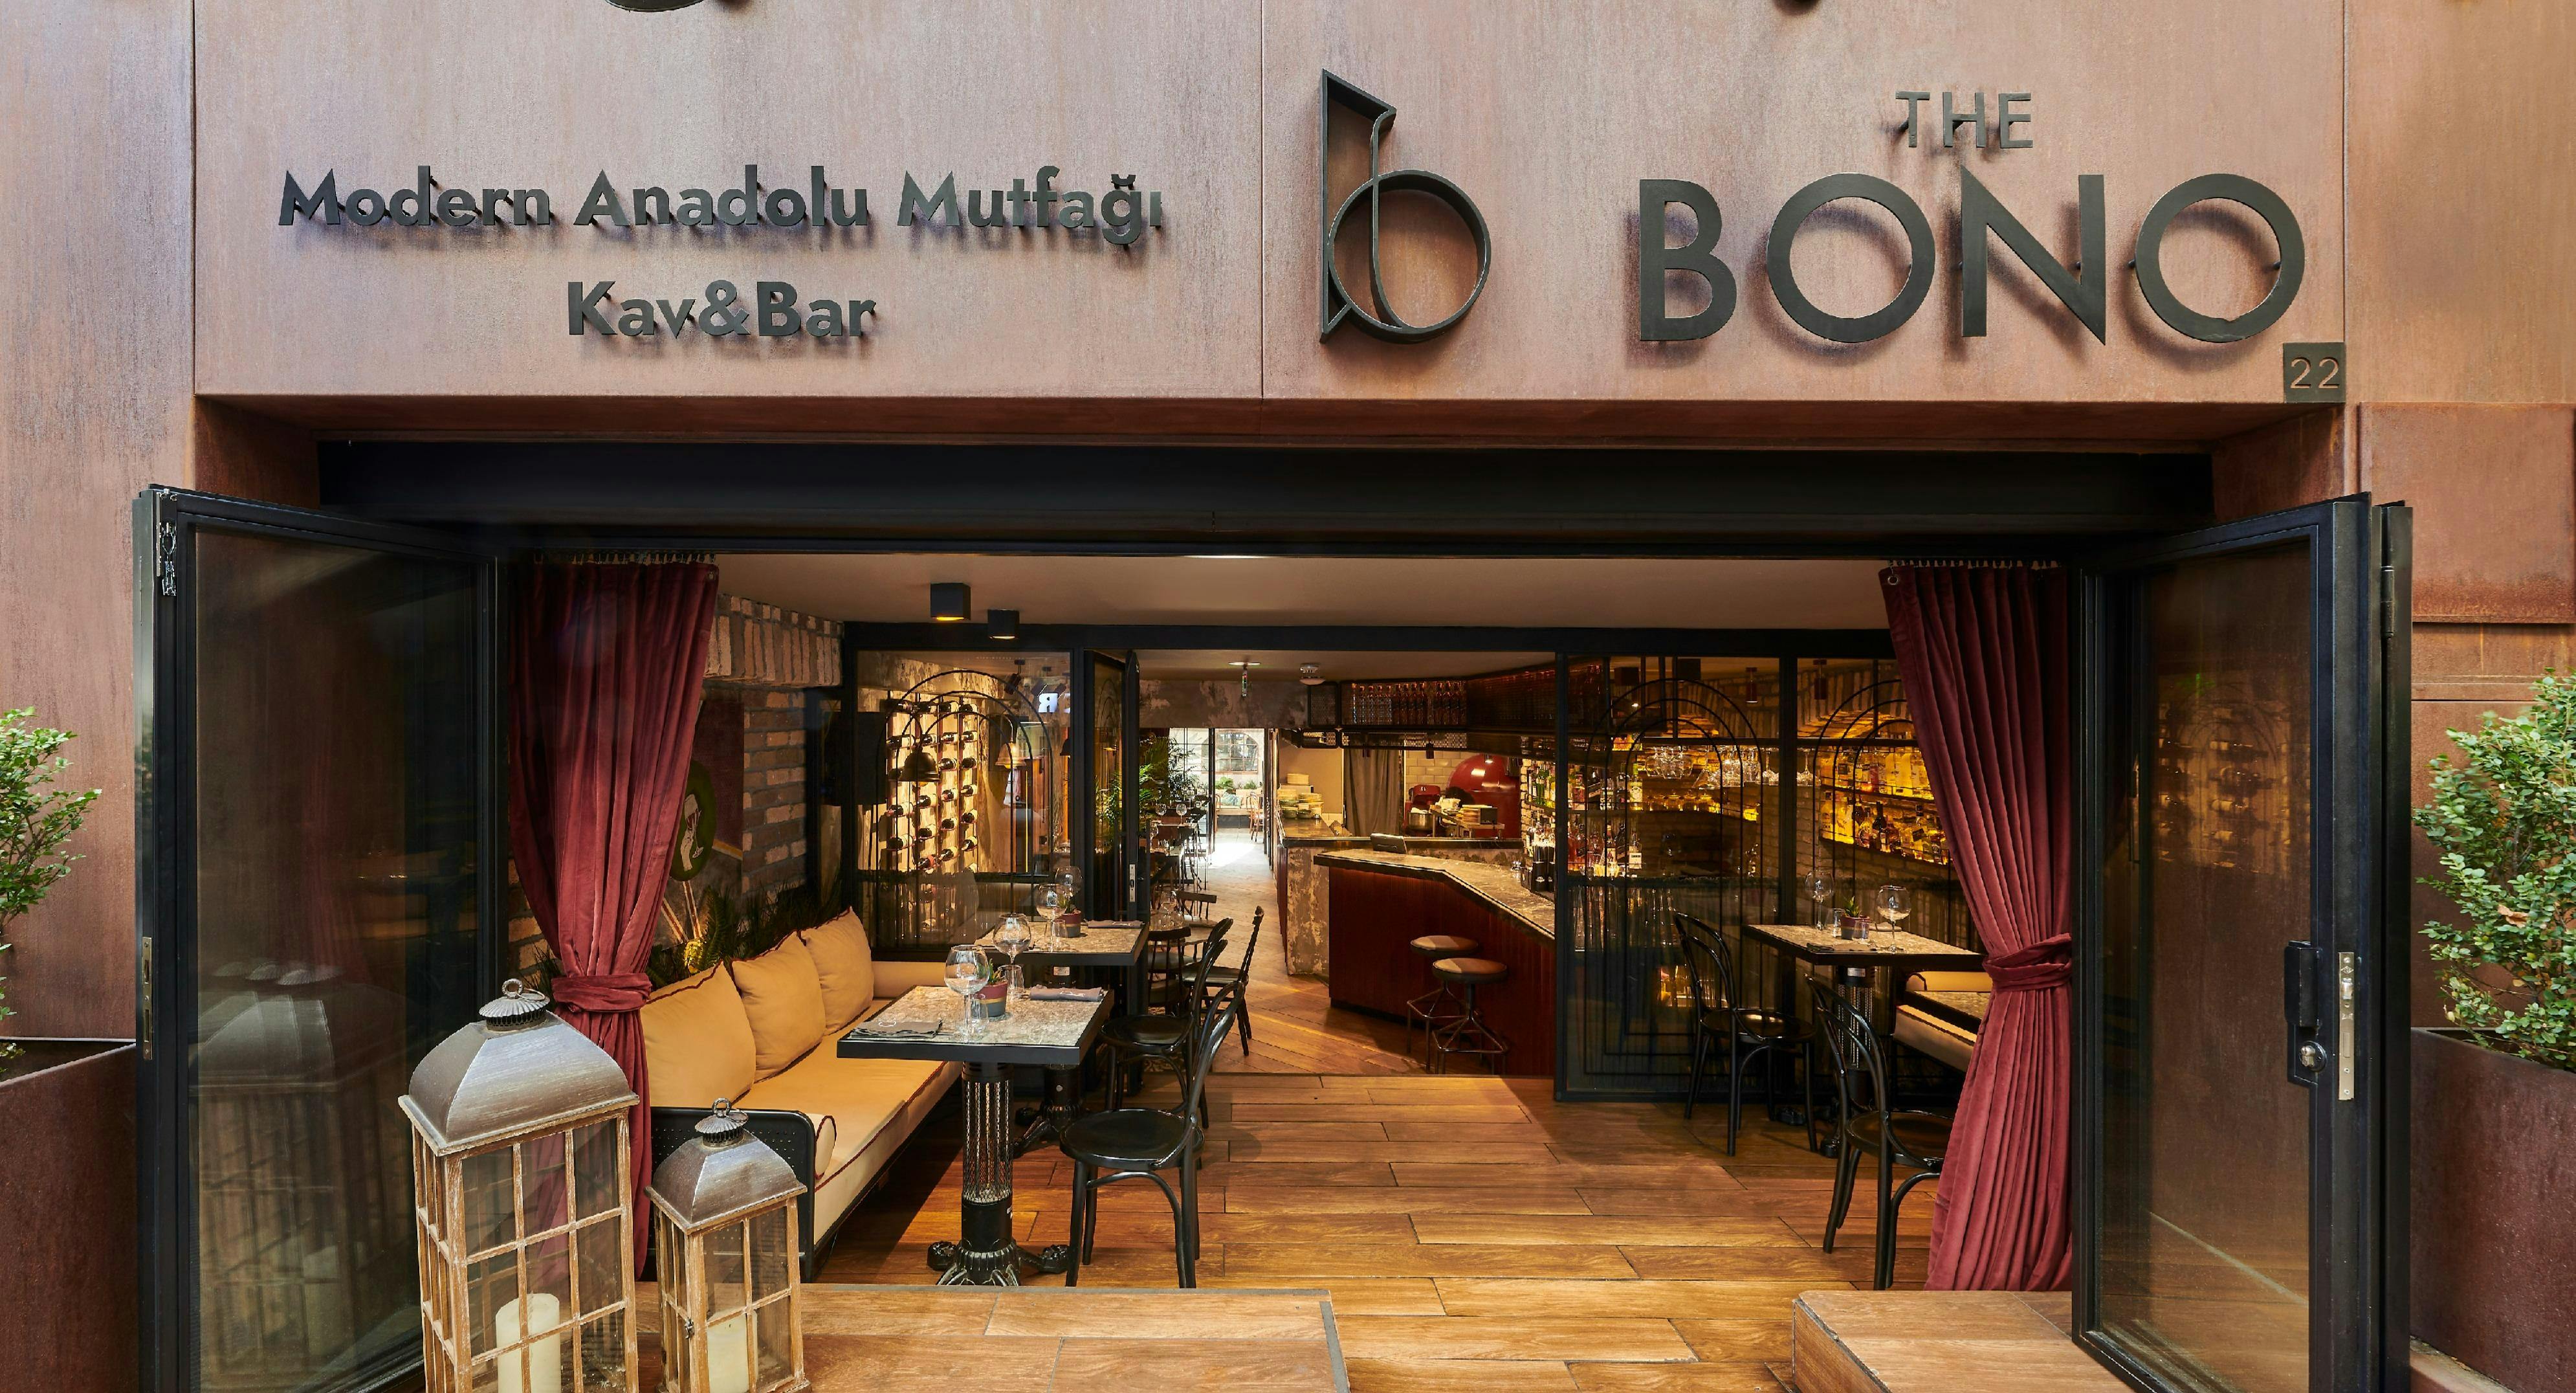 Nişantaşı, İstanbul şehrindeki The Bono restoranının fotoğrafı